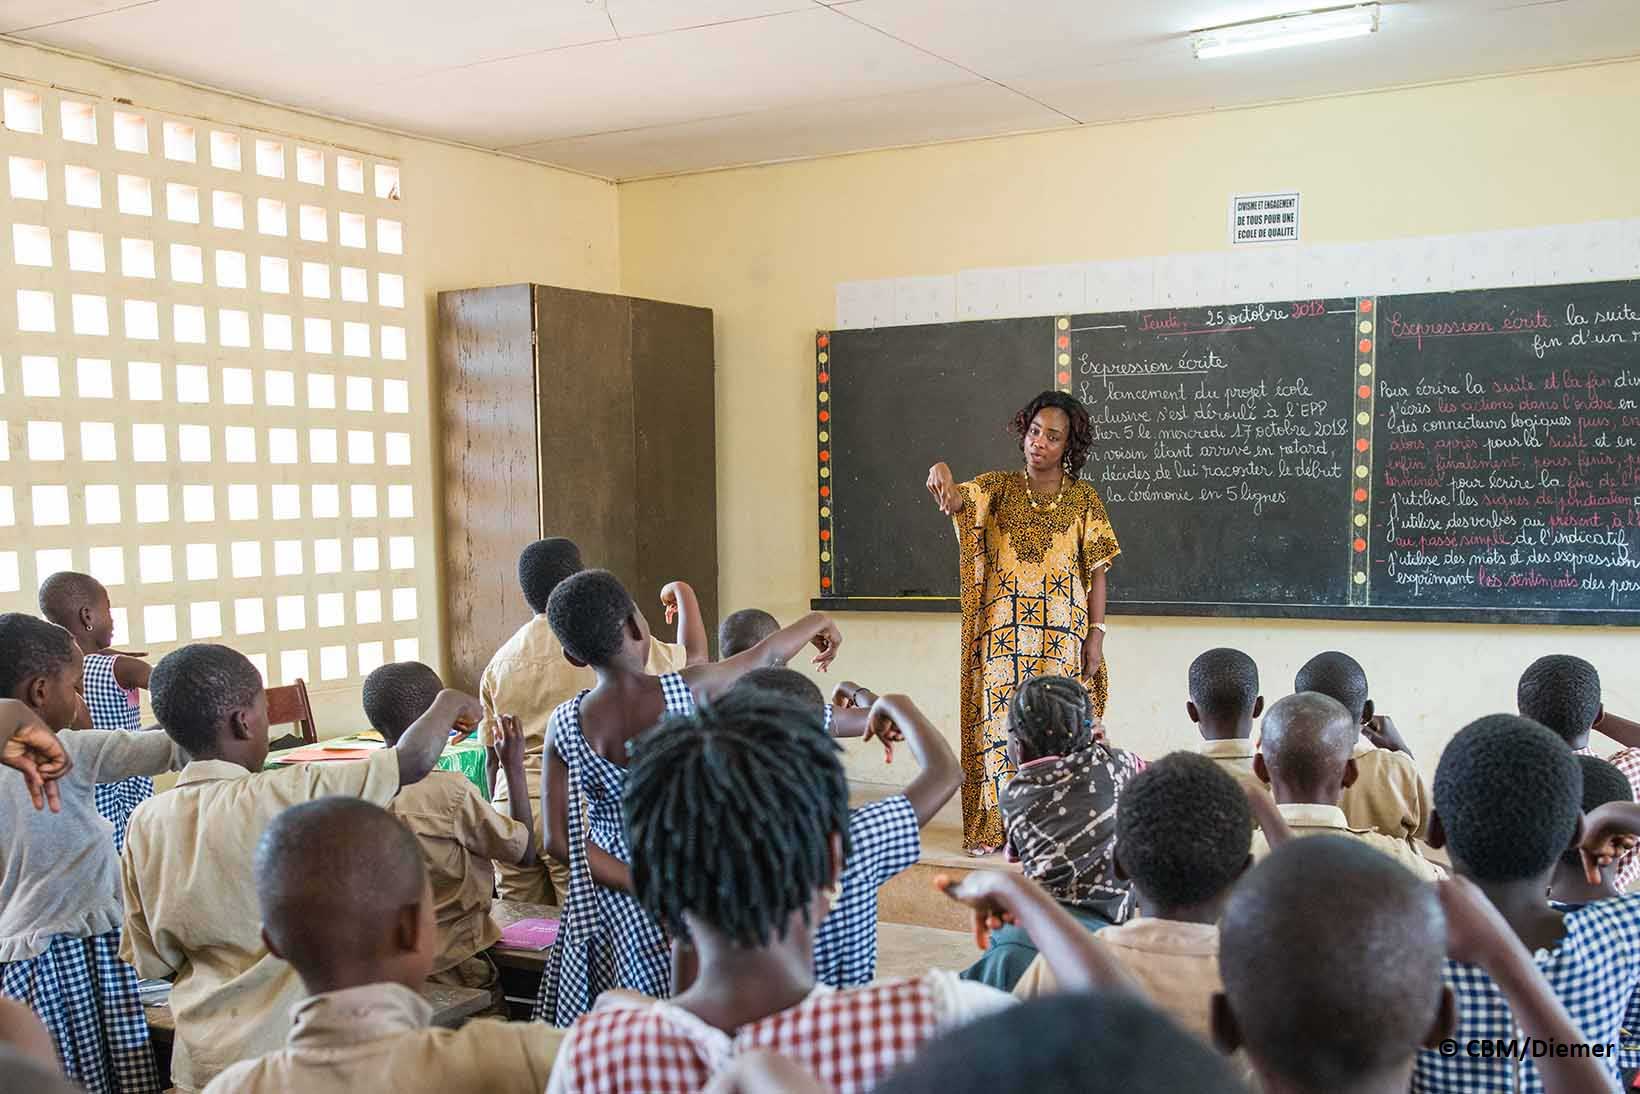 Eine Lehrerin zeigt vor der Klasse Ausdrücke in Gebärdensprache, alle Kinder üben sie.